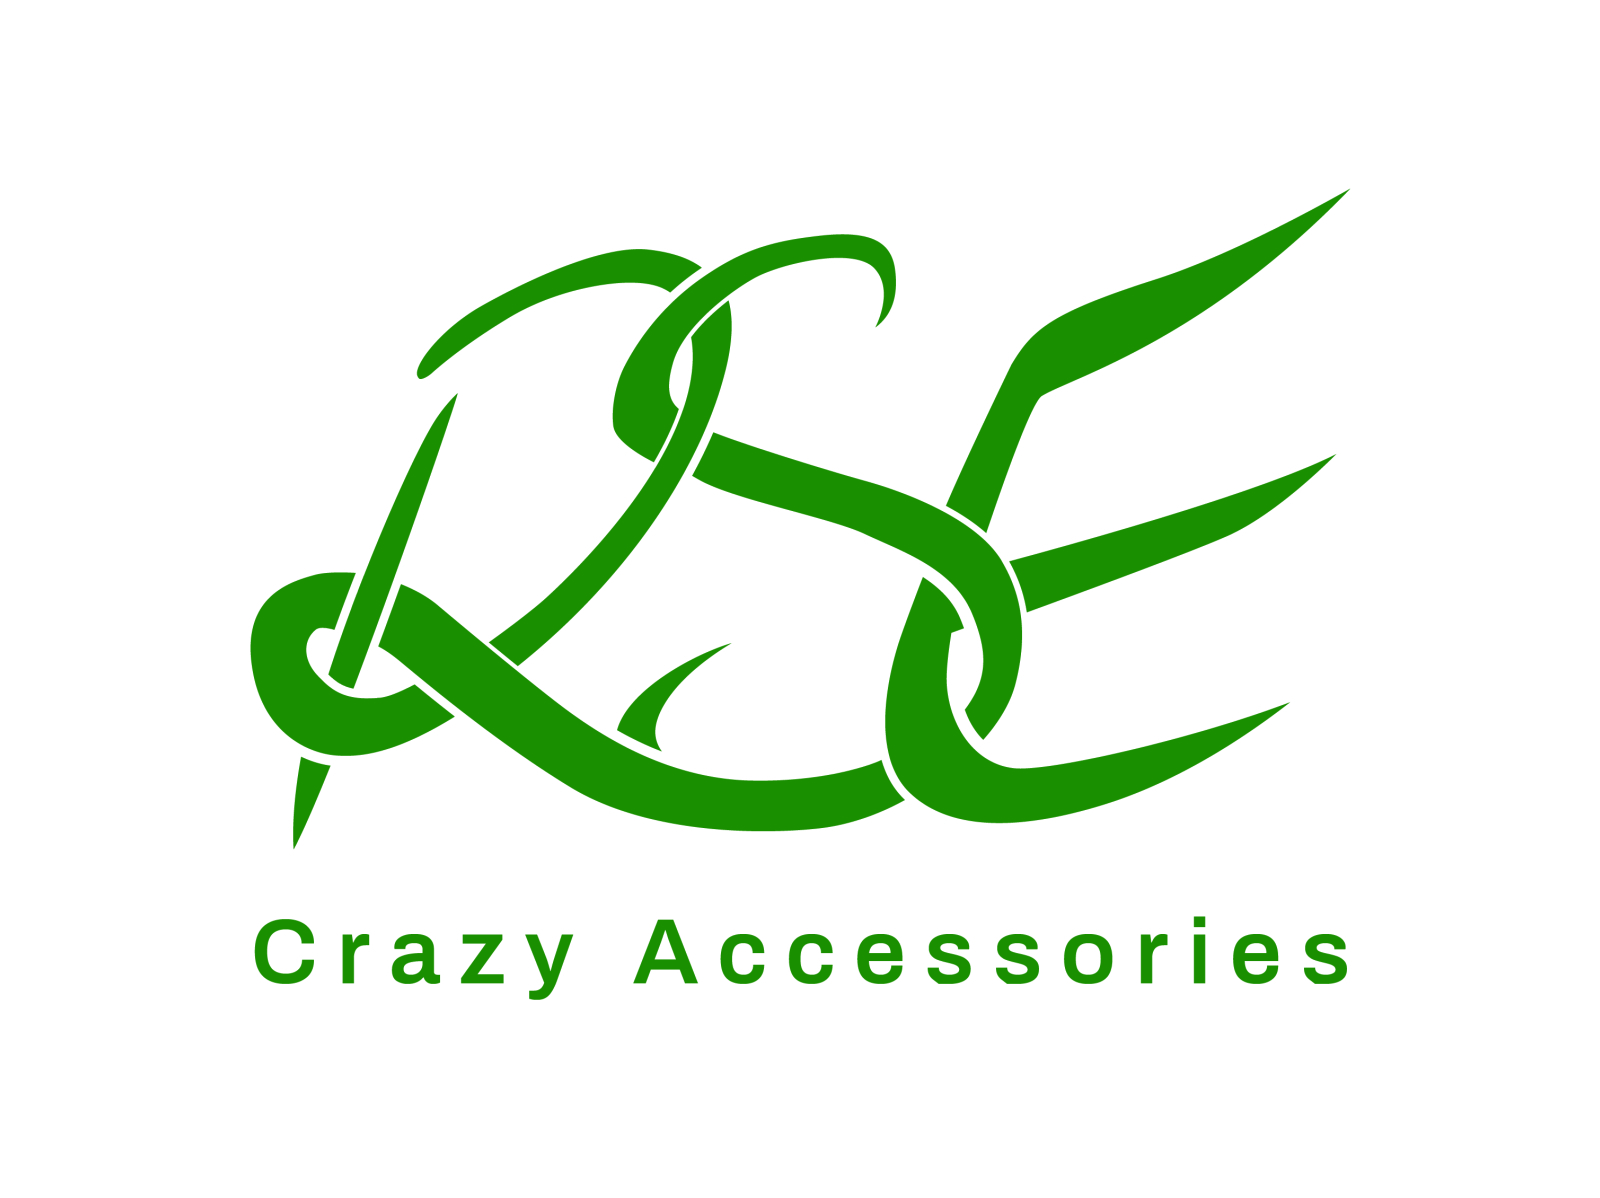 Crazy logo Vectors & Illustrations for Free Download | Freepik